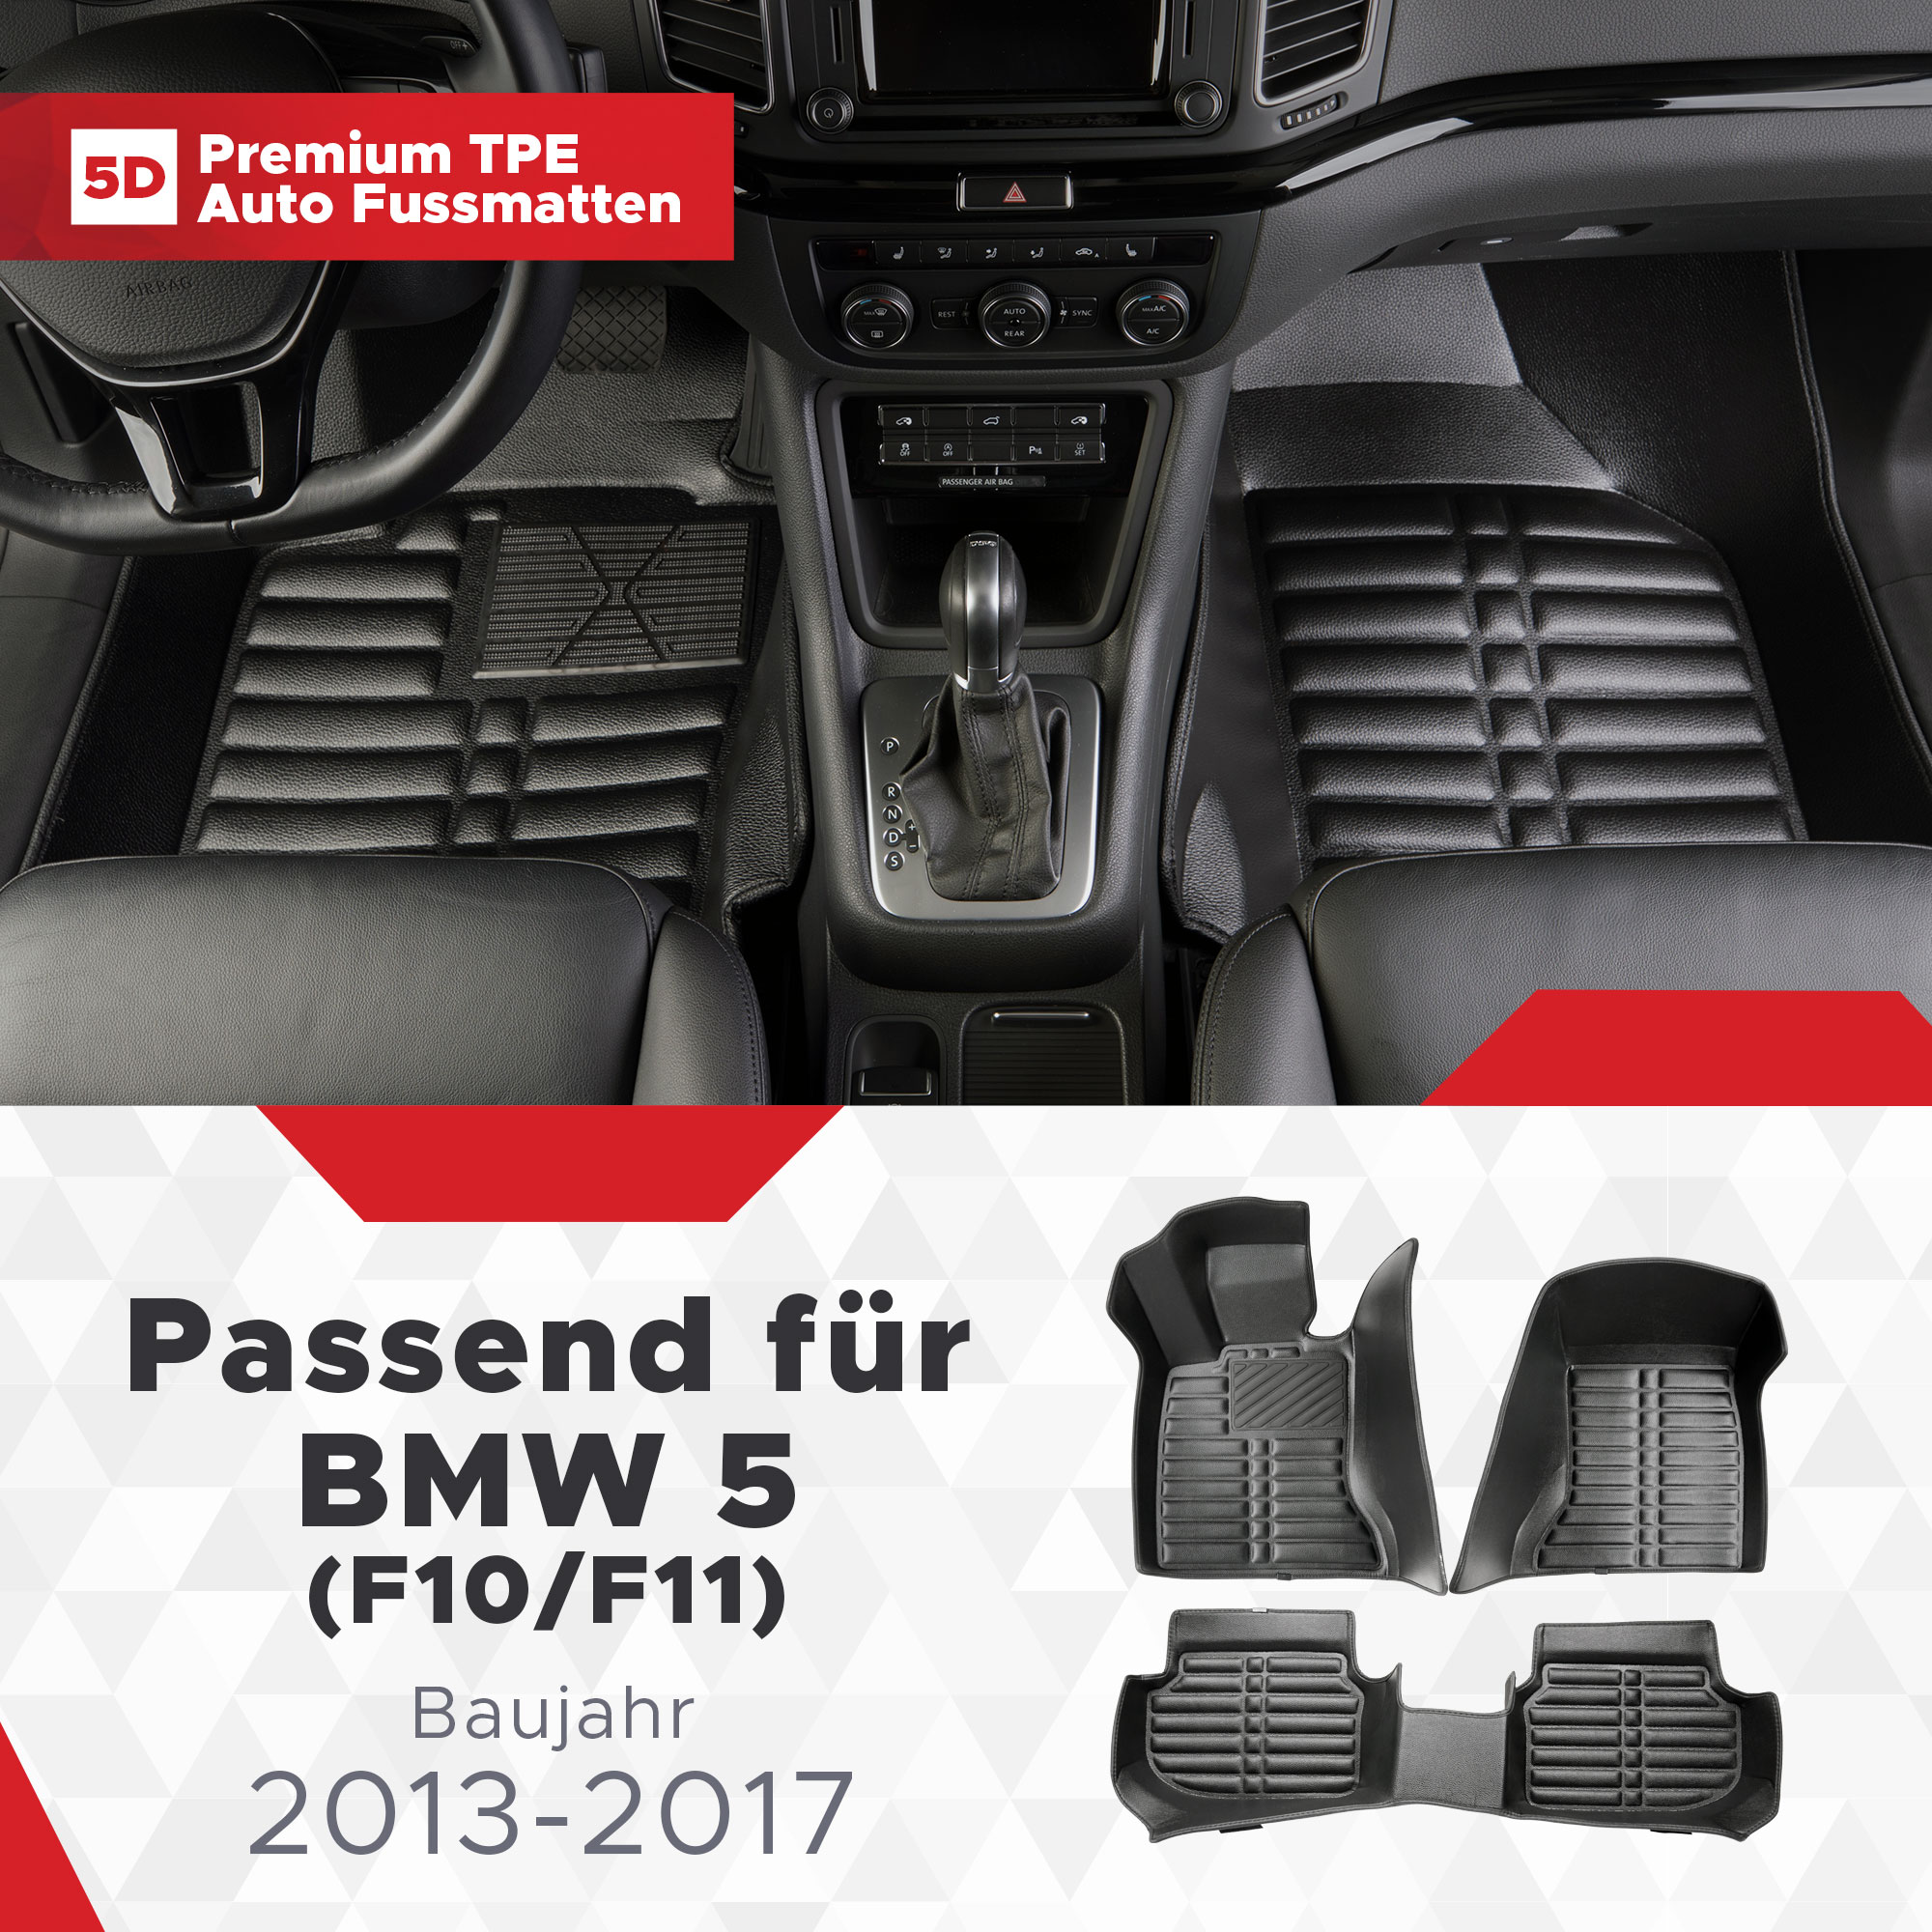 5D BMW 5 (F10/F11) Fussmatten Bj 2013-2017 TPE